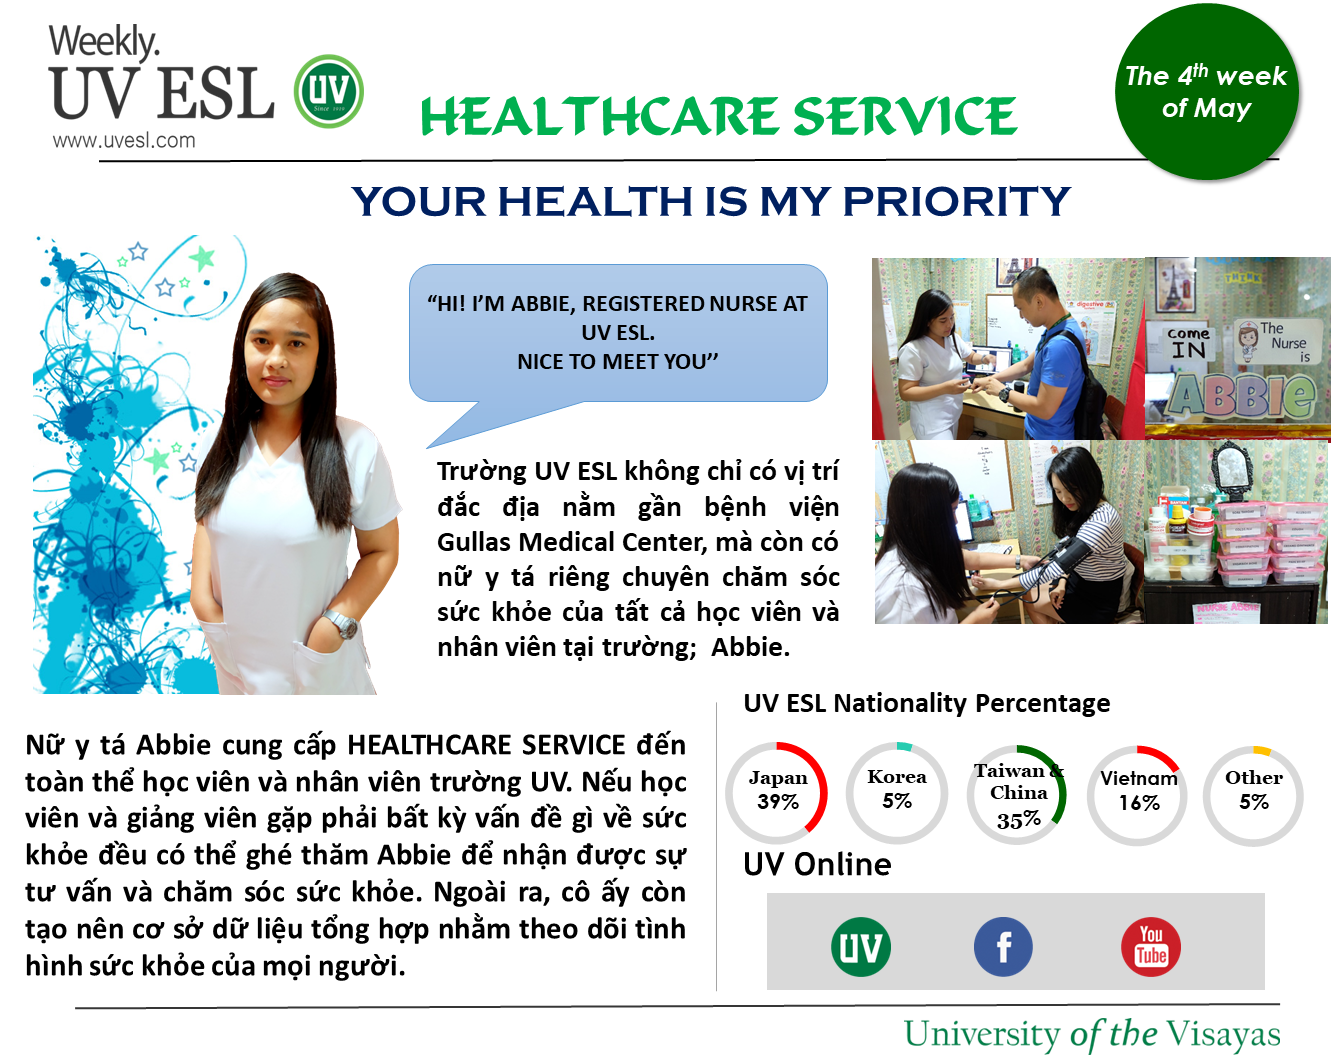 Dịch vụ chăm sóc sức khỏe hoàn toàn miễn phí của trường Anh ngữ UV dành cho tất cả học viên & nhân viên tại trường